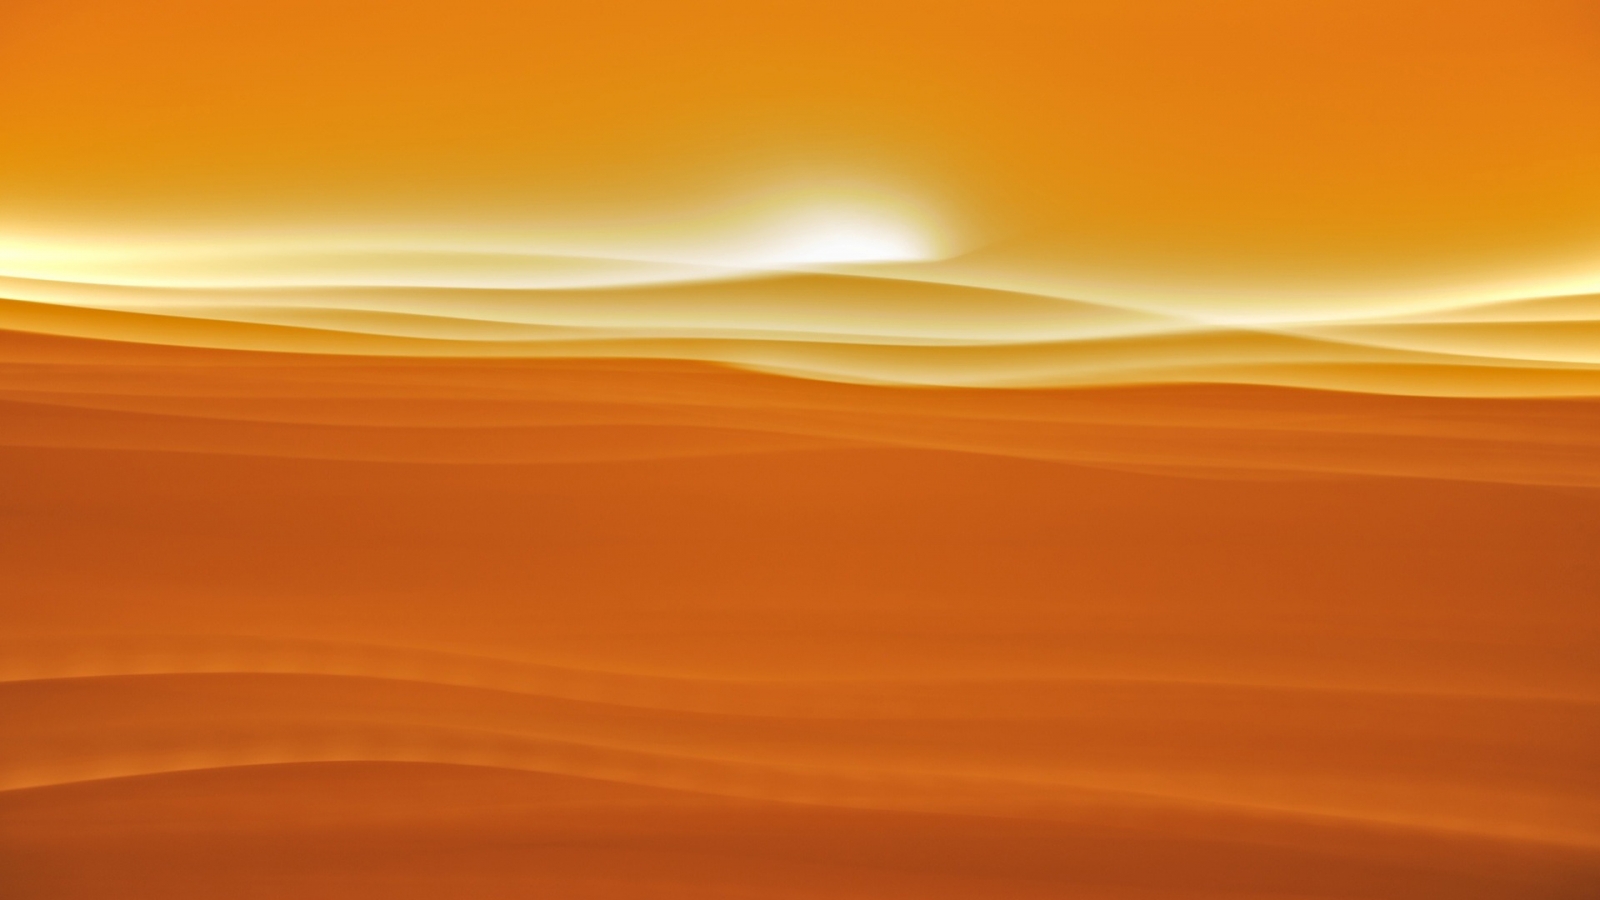 Desert sunlight for 1600 x 900 HDTV resolution